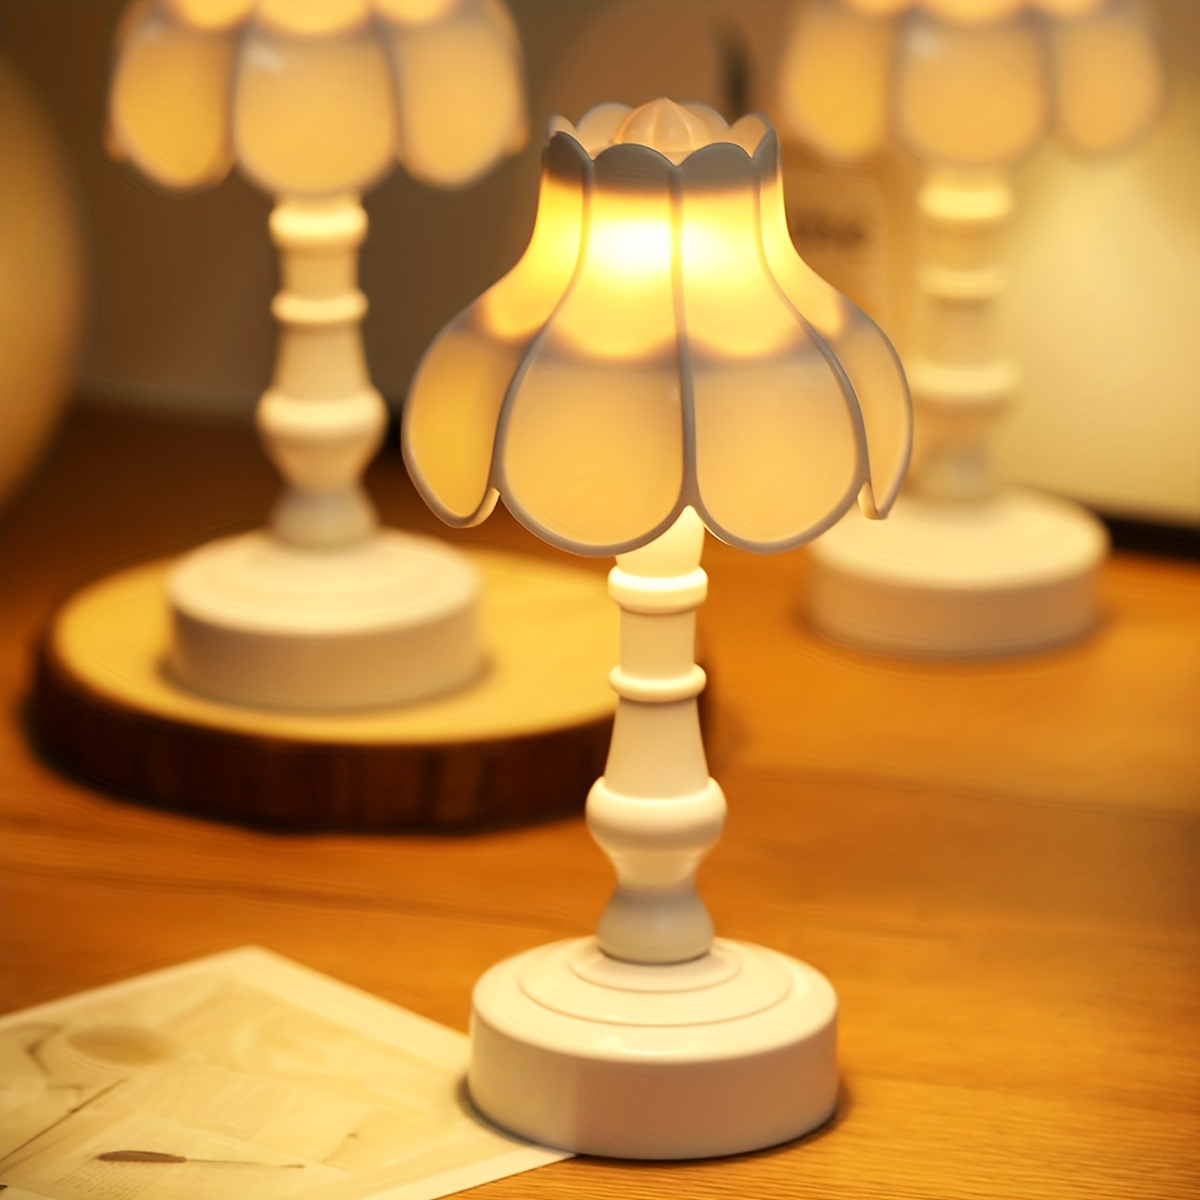 Lámpara recargable por USB, lámpara de flor de loto para niñas, lámparas  para dormitorios, lámpara de noche, lámpara de flor de loto, lámpara  pequeña